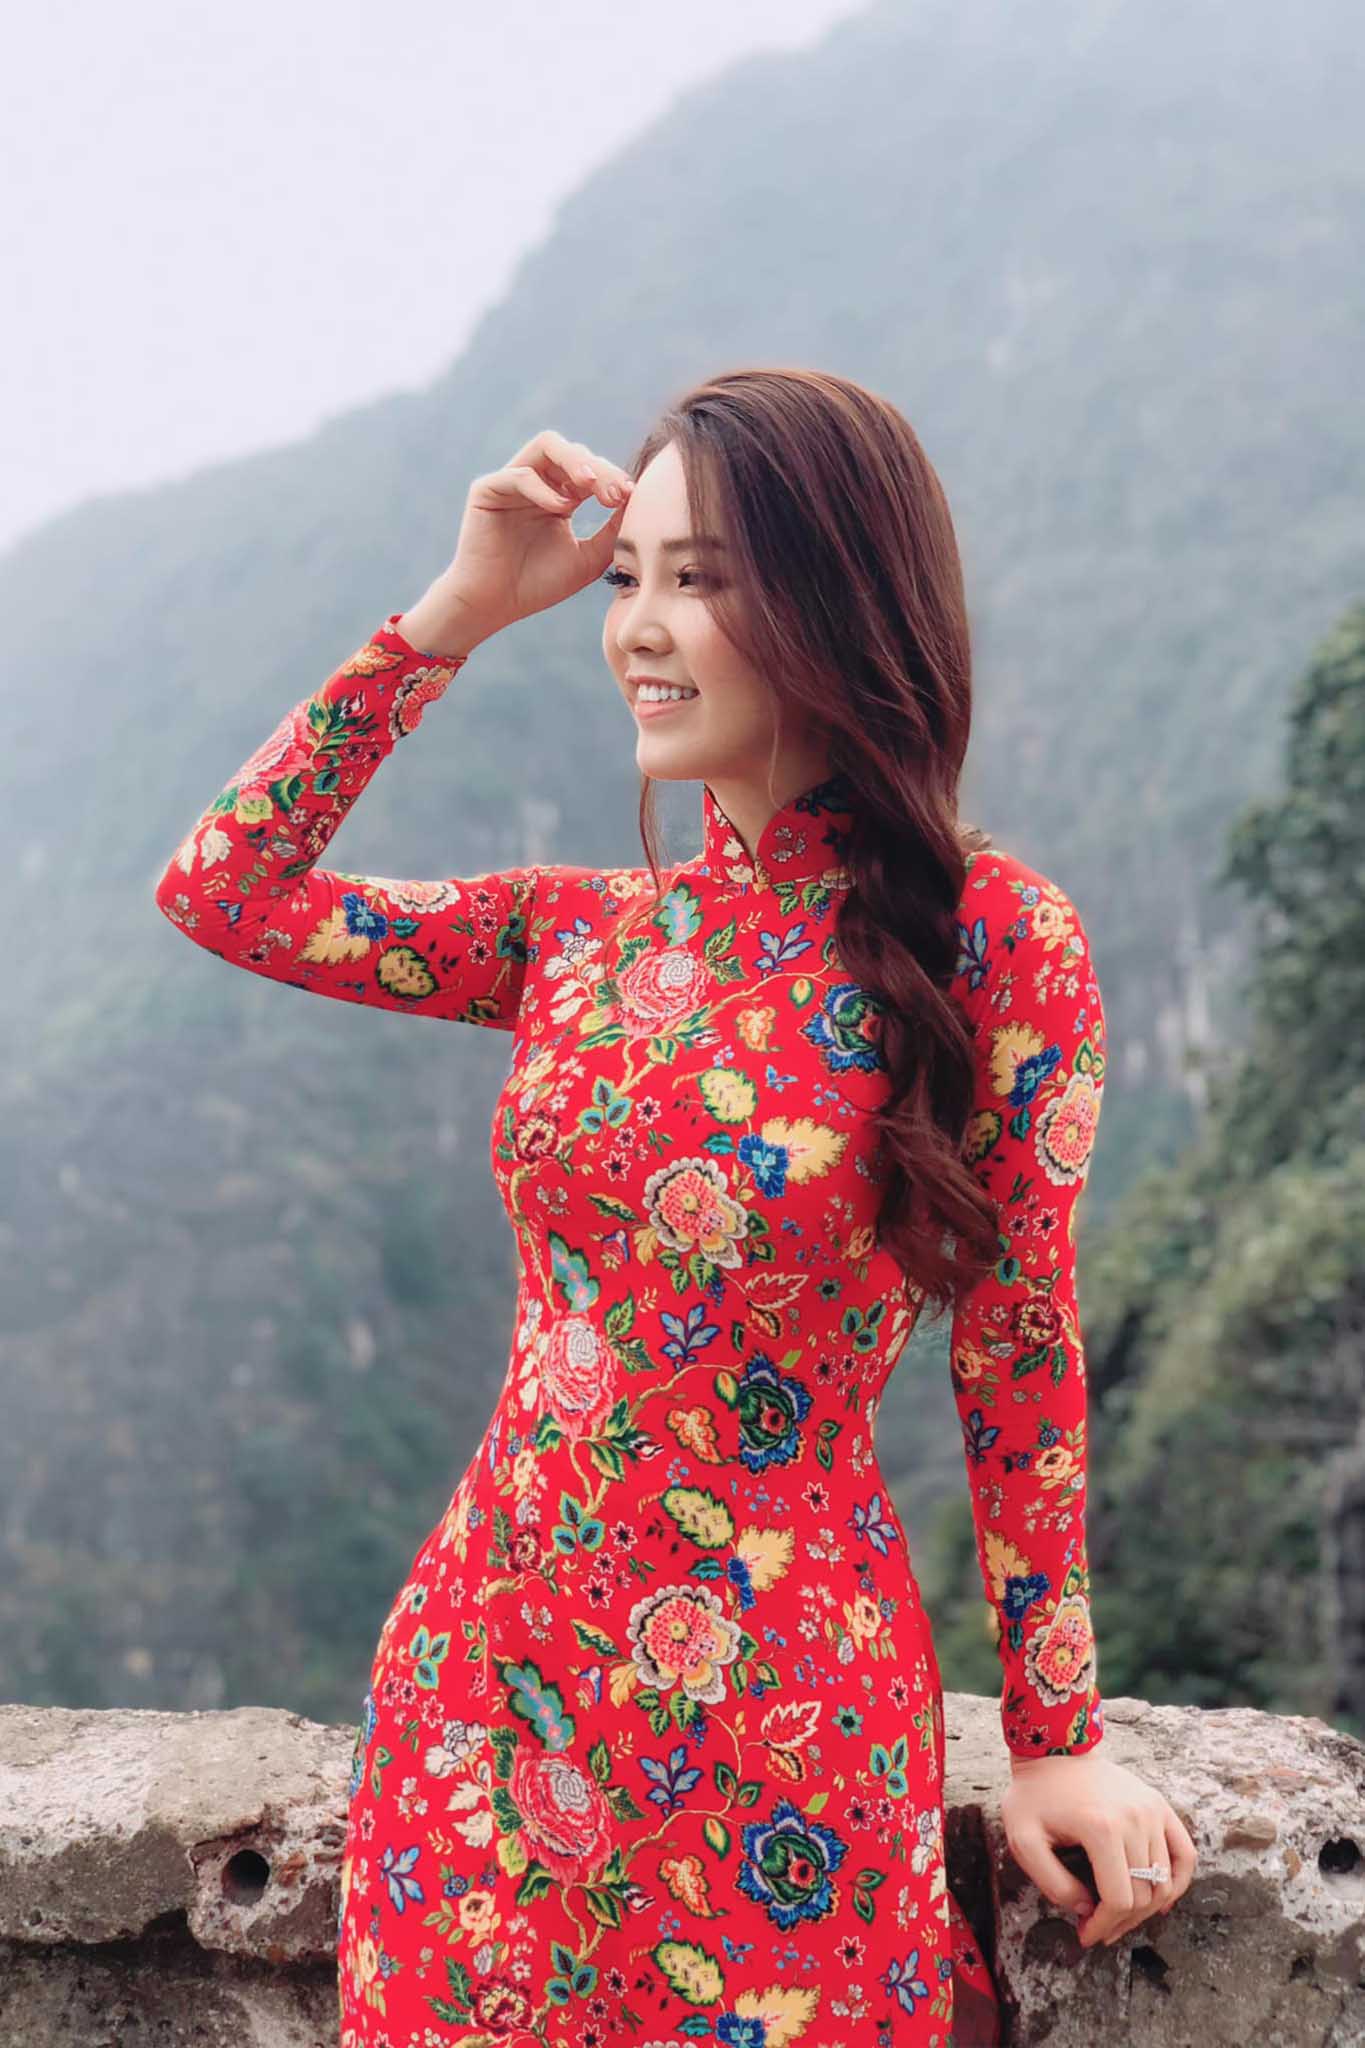 U40 vẫn diện váy hoa trẻ trung rạng ngời, BTV Thuỵ Vân không hổ danh hoa khôi nhà Đài - 4